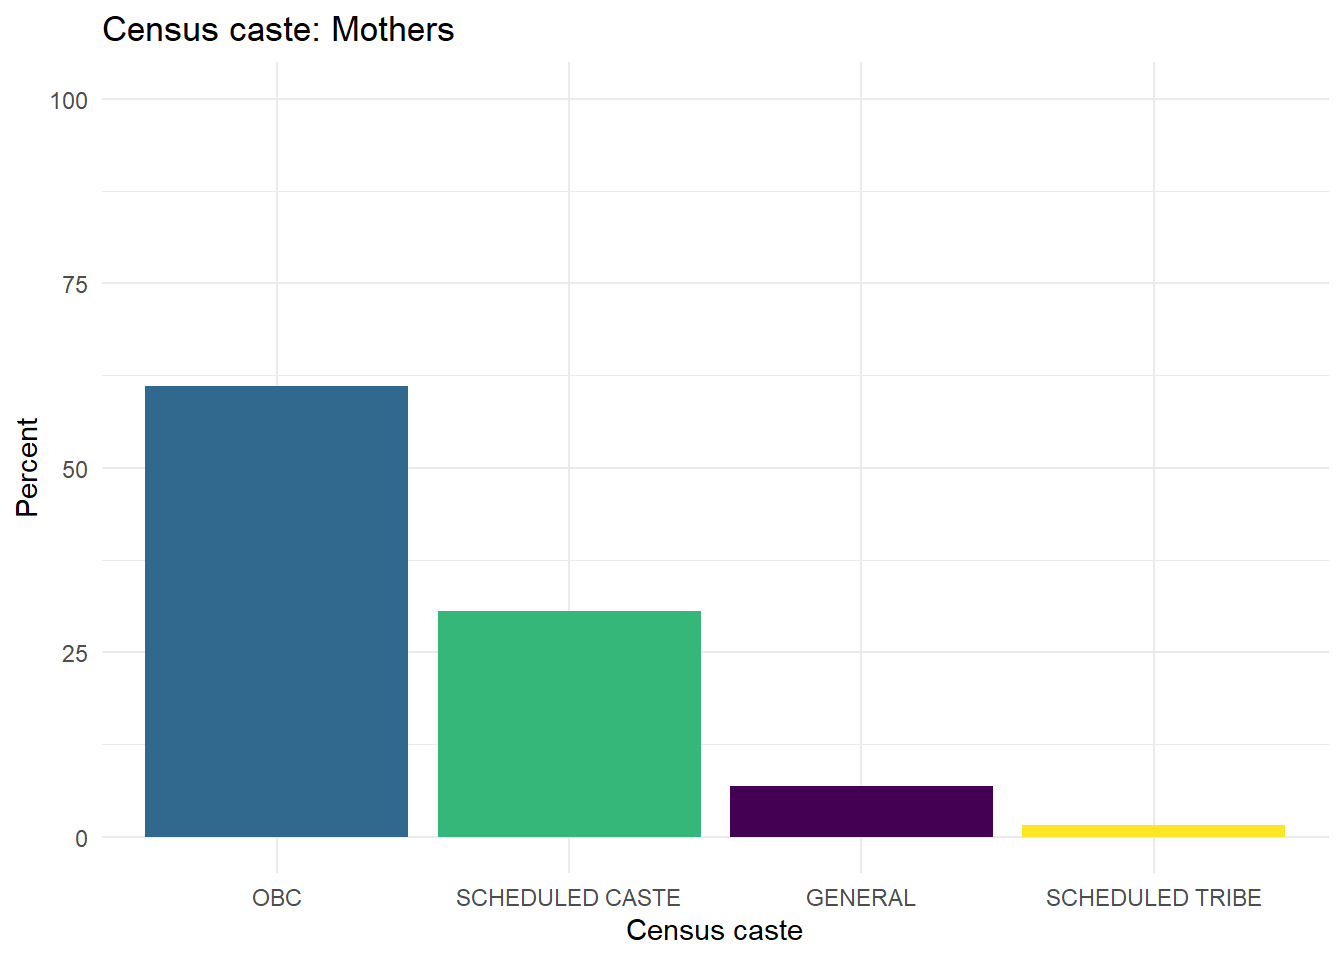 Census caste affiliations